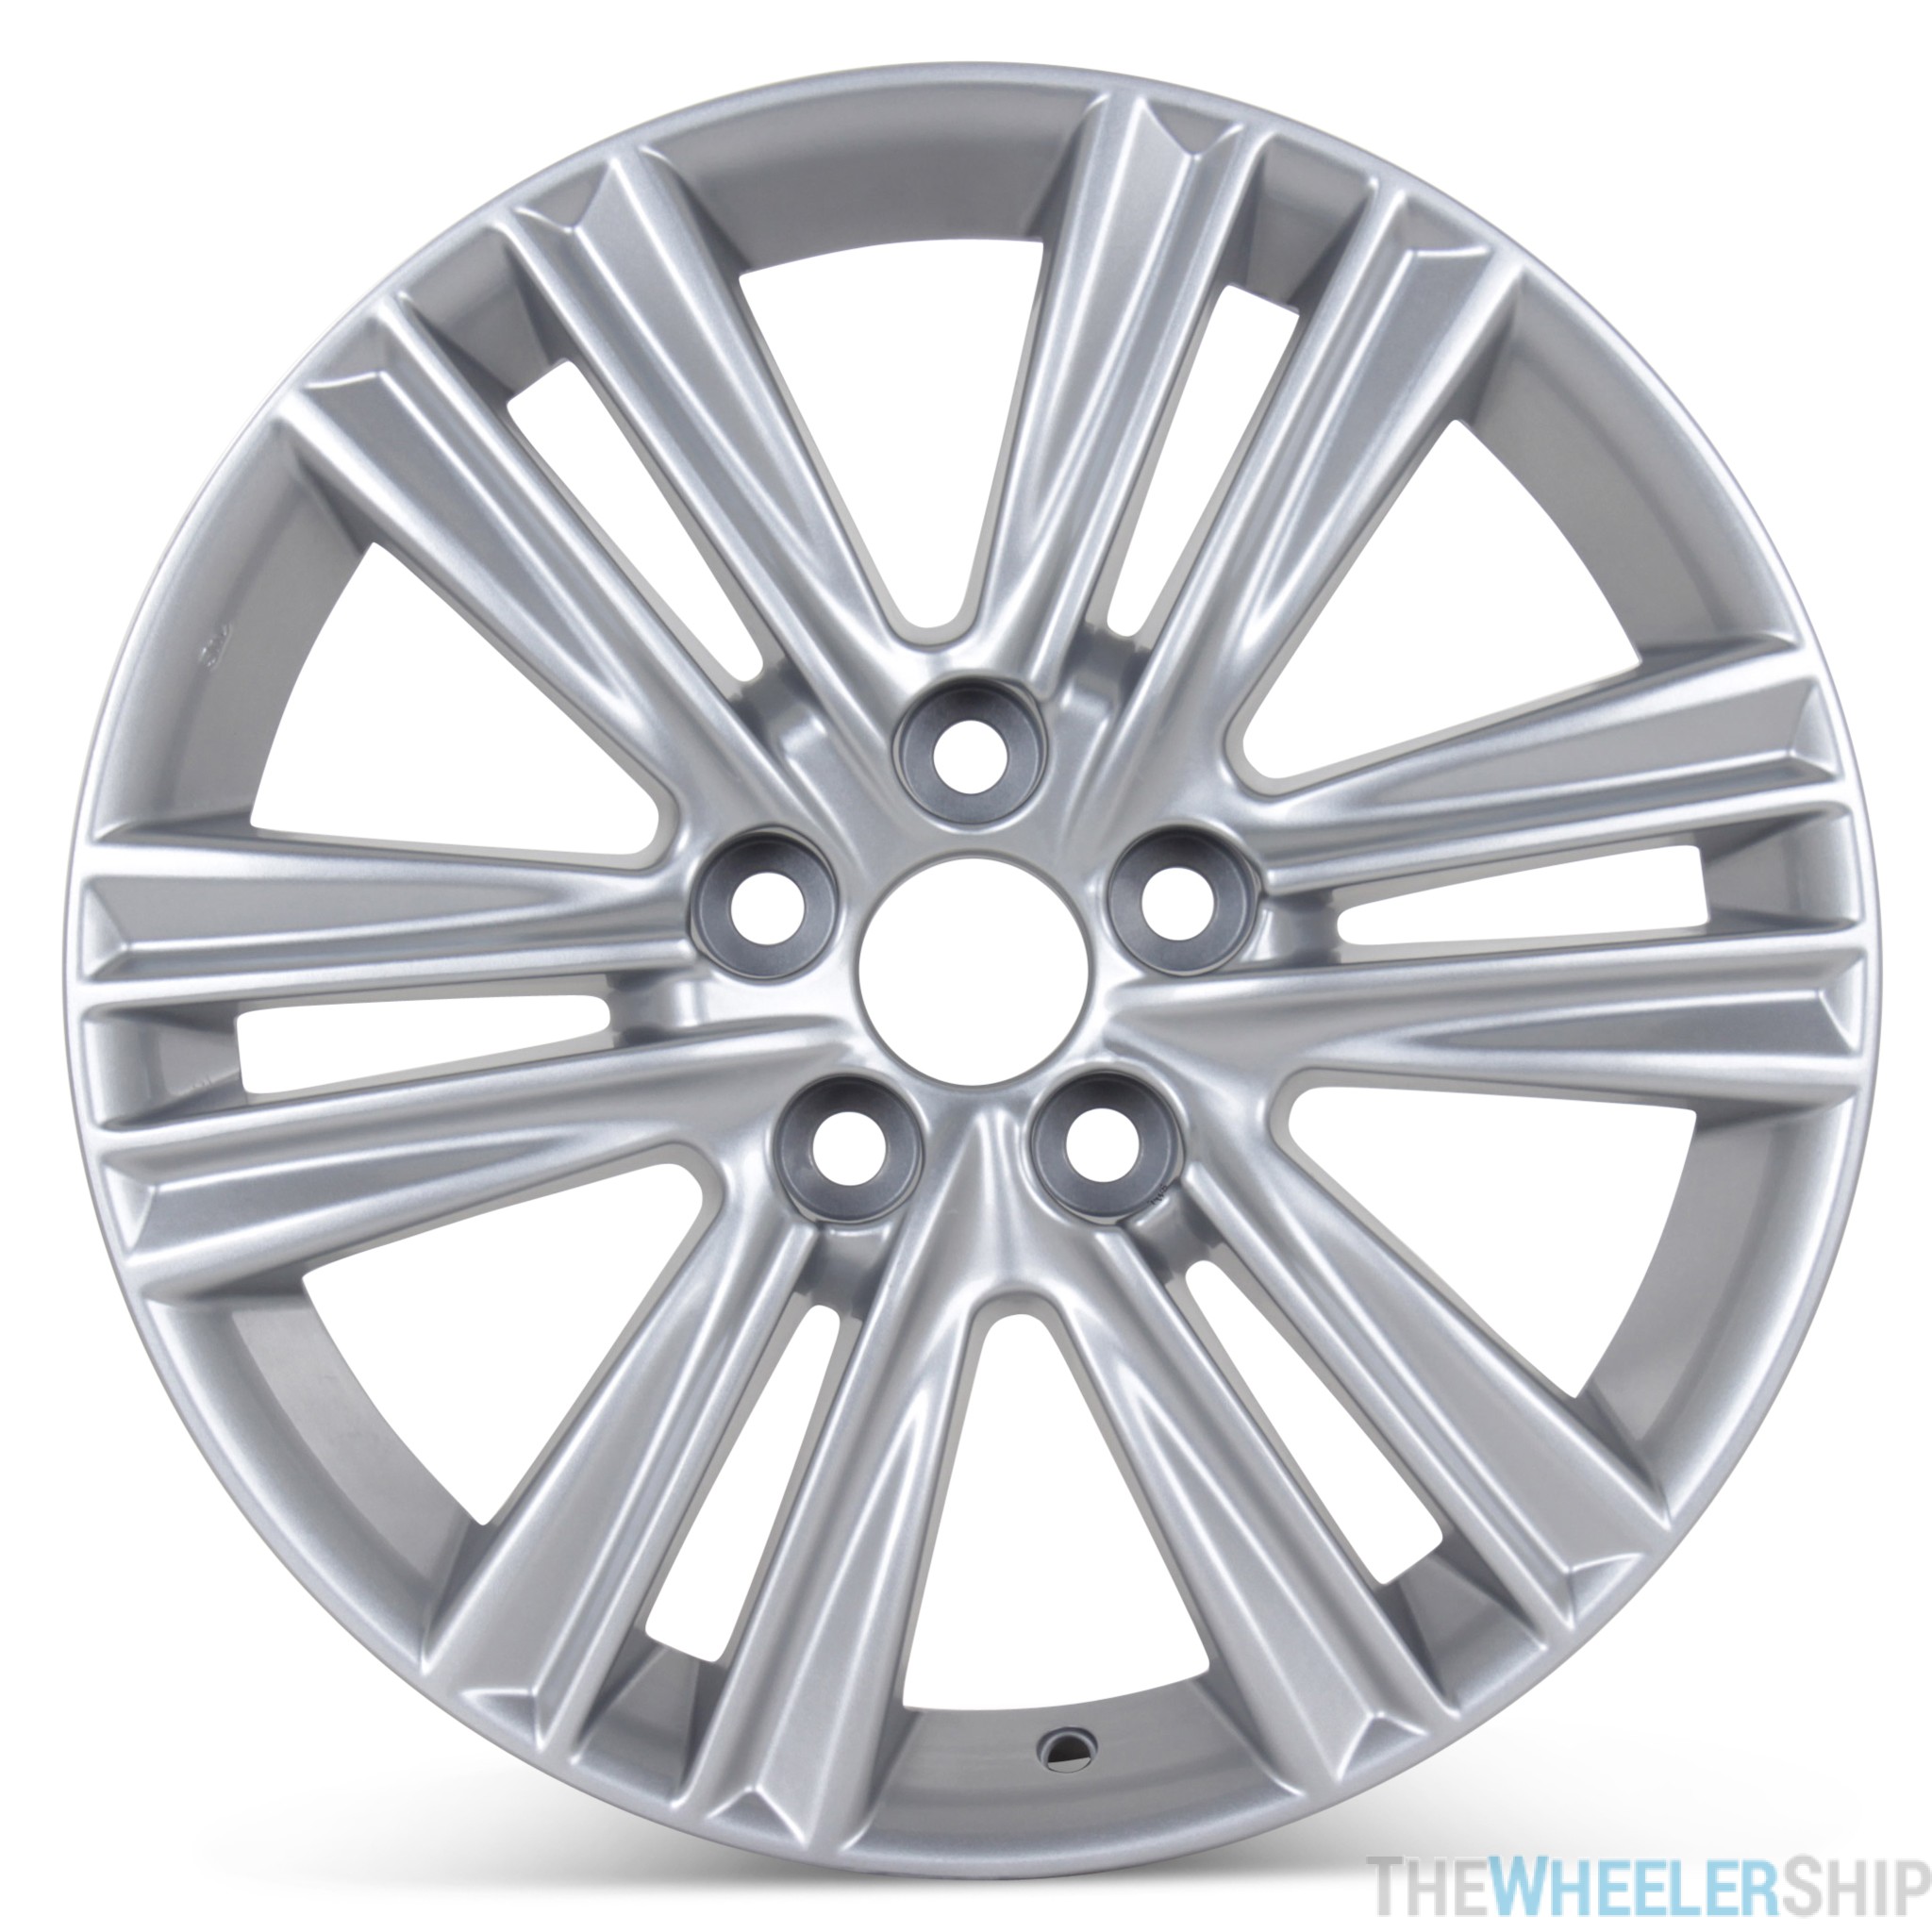 2013-2015 Lexus ES 350 Wheels | 17" Lexus Alloy Wheels Tire Size For 2013 Lexus Es 350